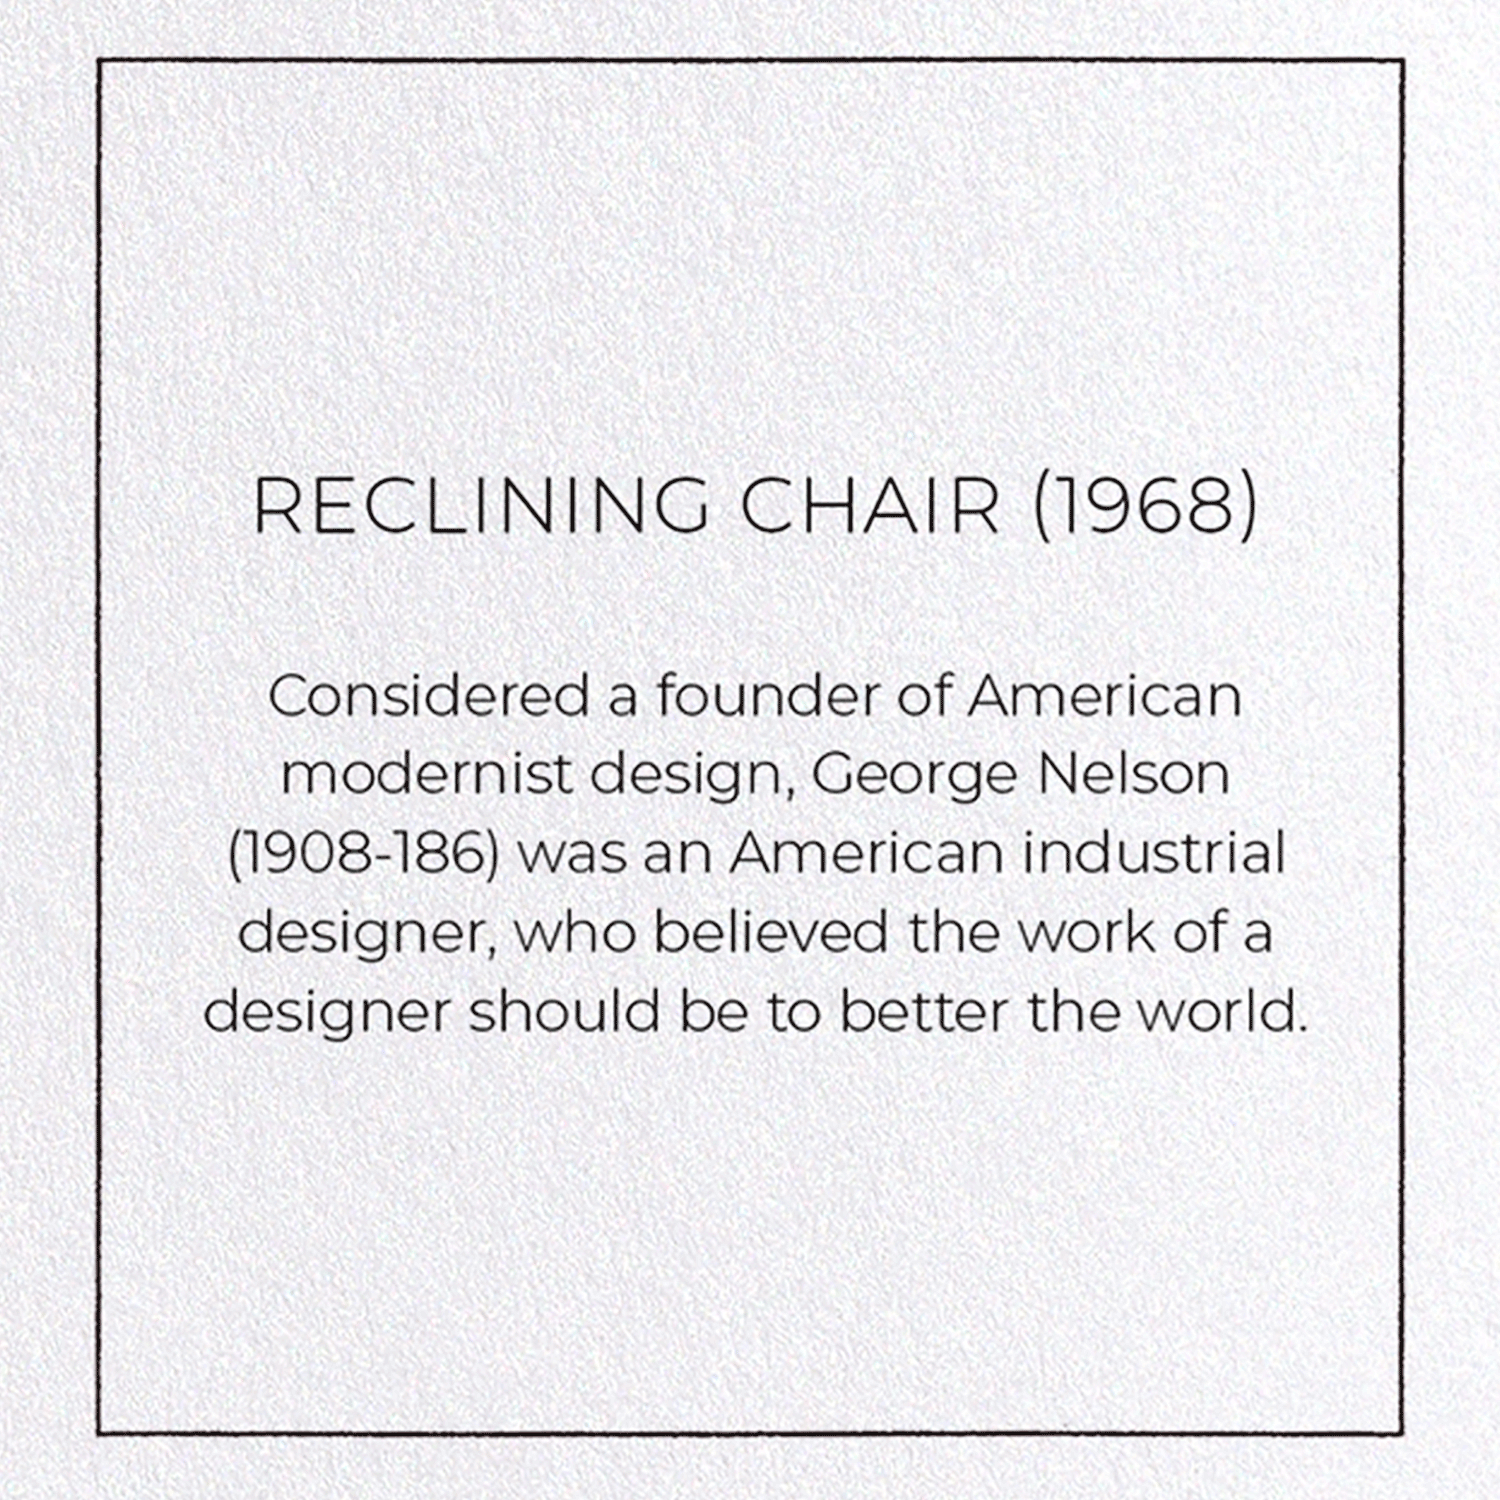 RECLINING CHAIR (1968)